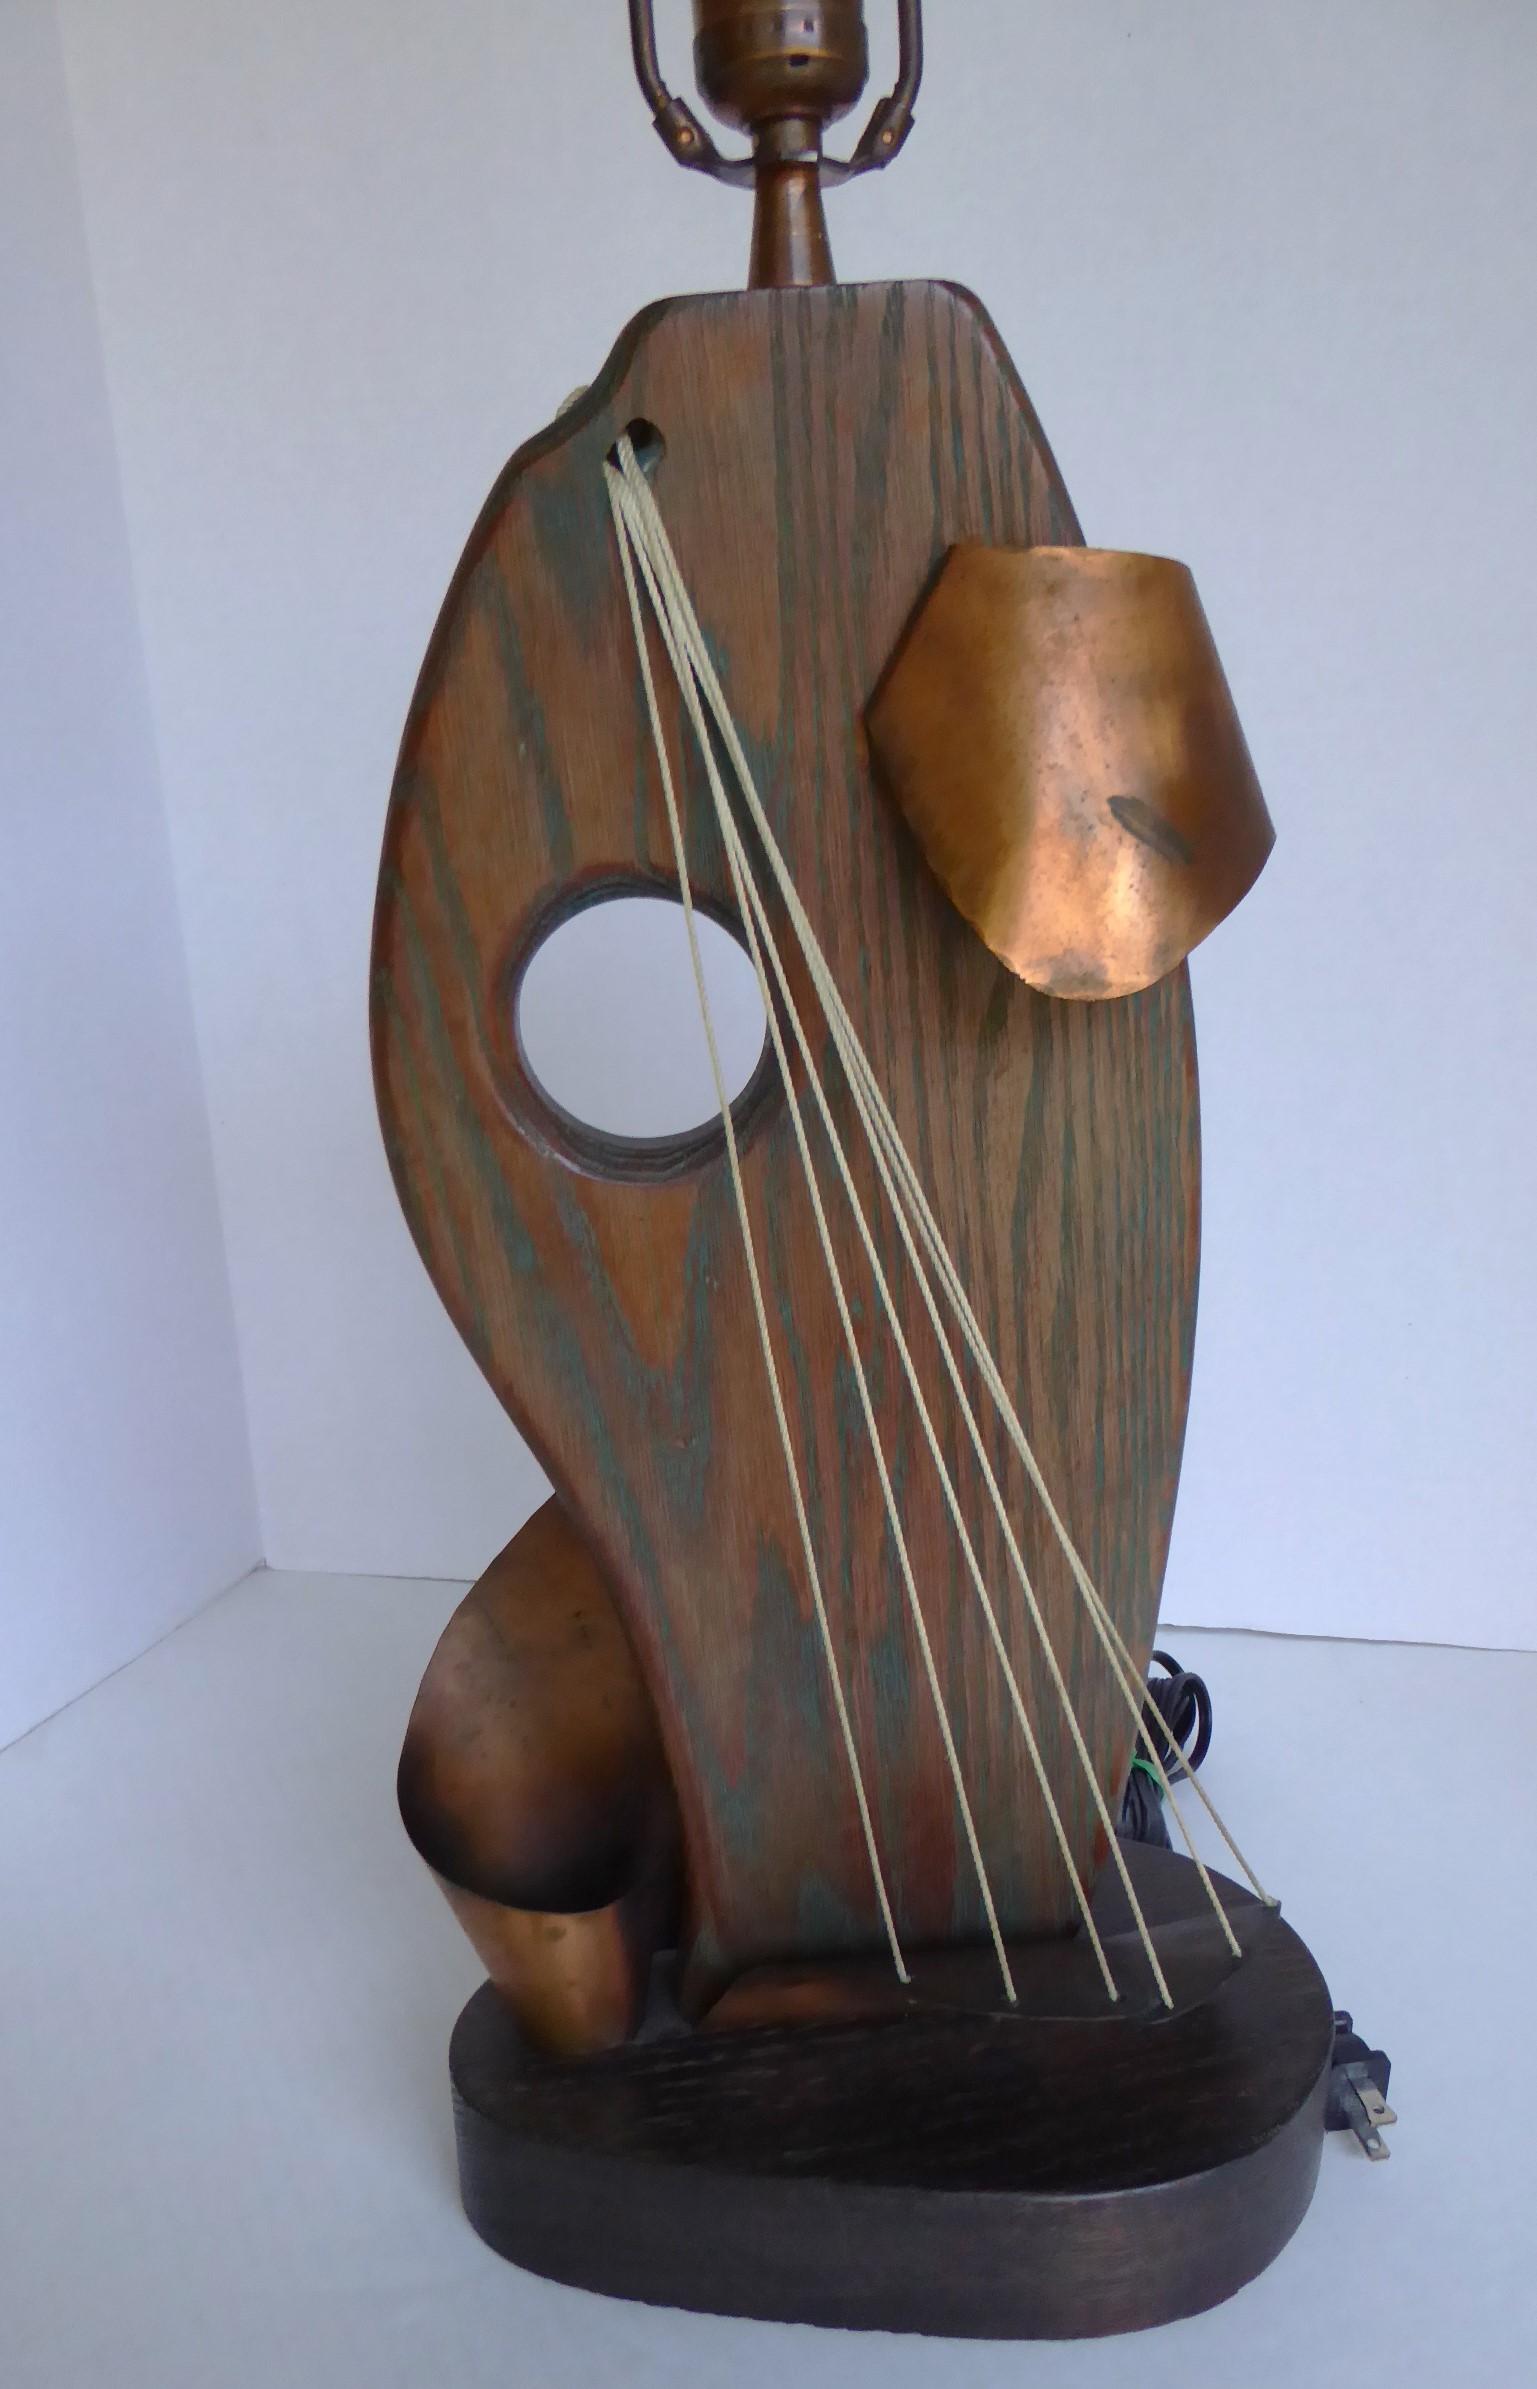 Lampe de table d'une grande modernité, conçue par Yasha Heifetz dans les années 1950.  Le corps est en chêne cérusé et une bande de cuivre tourbillonnante entoure le bois et l'acier.  accent de corde simulant une voile.  Un épi de faîtage en métal